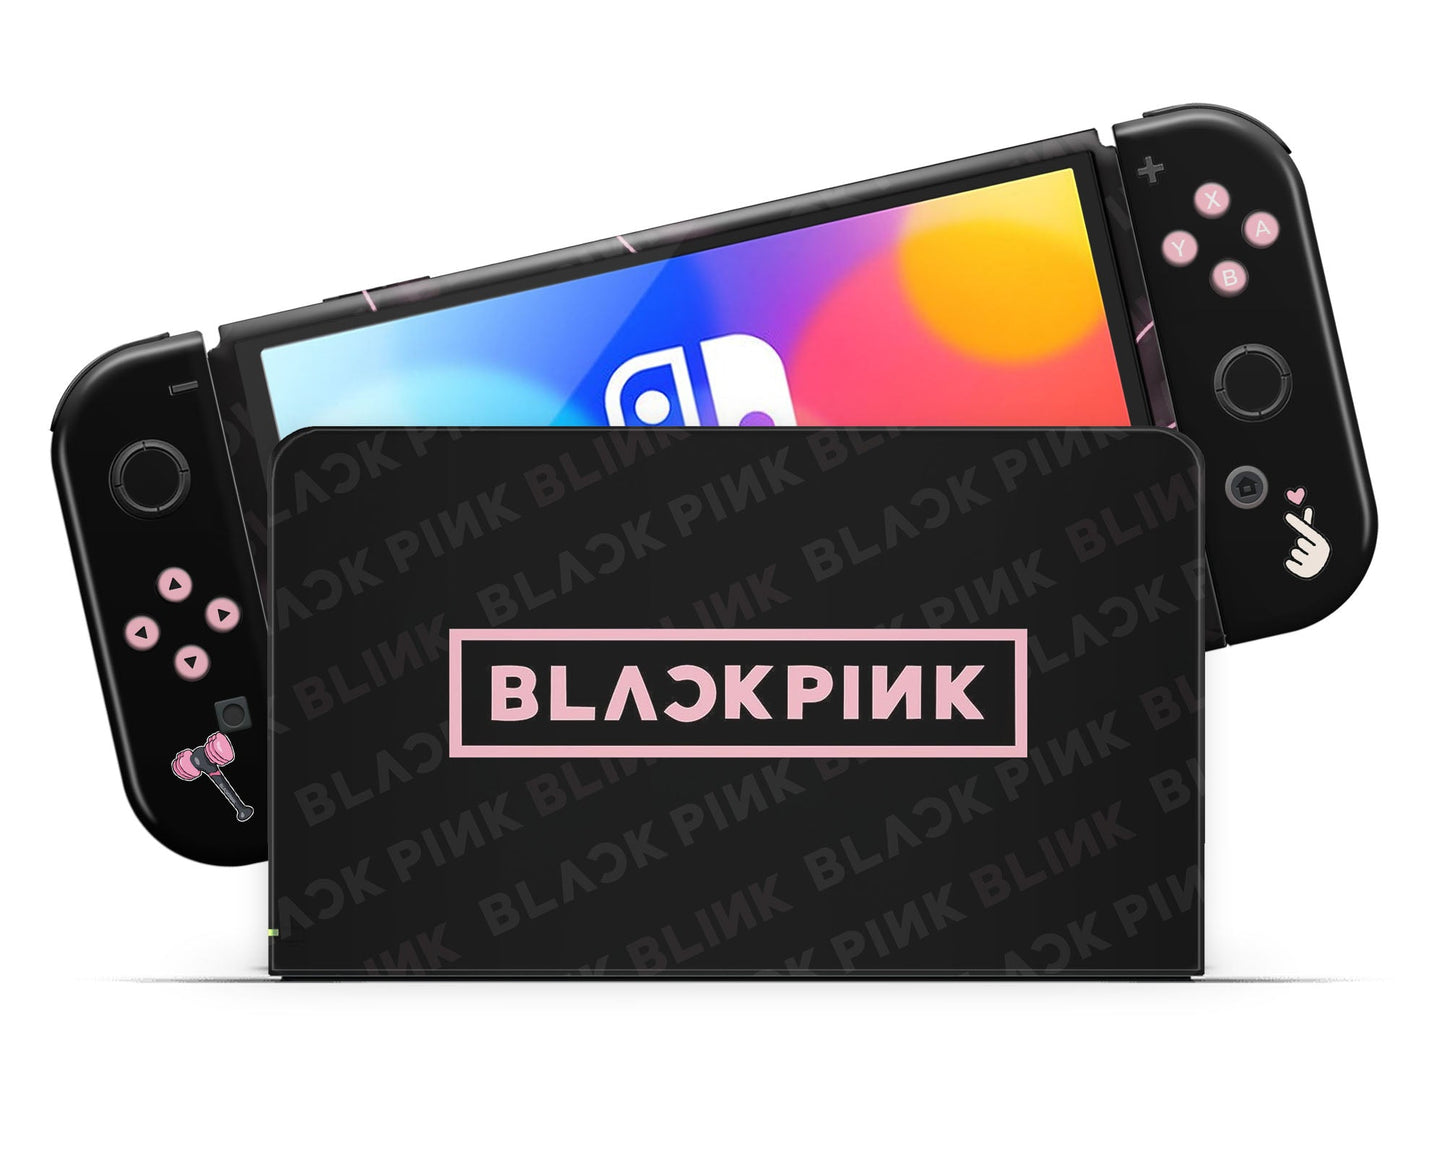 Lux Skins Nintendo Switch OLED BLACKPINK Full Set +Tempered Glass Skins - Pop culture BLACKPINK Skin